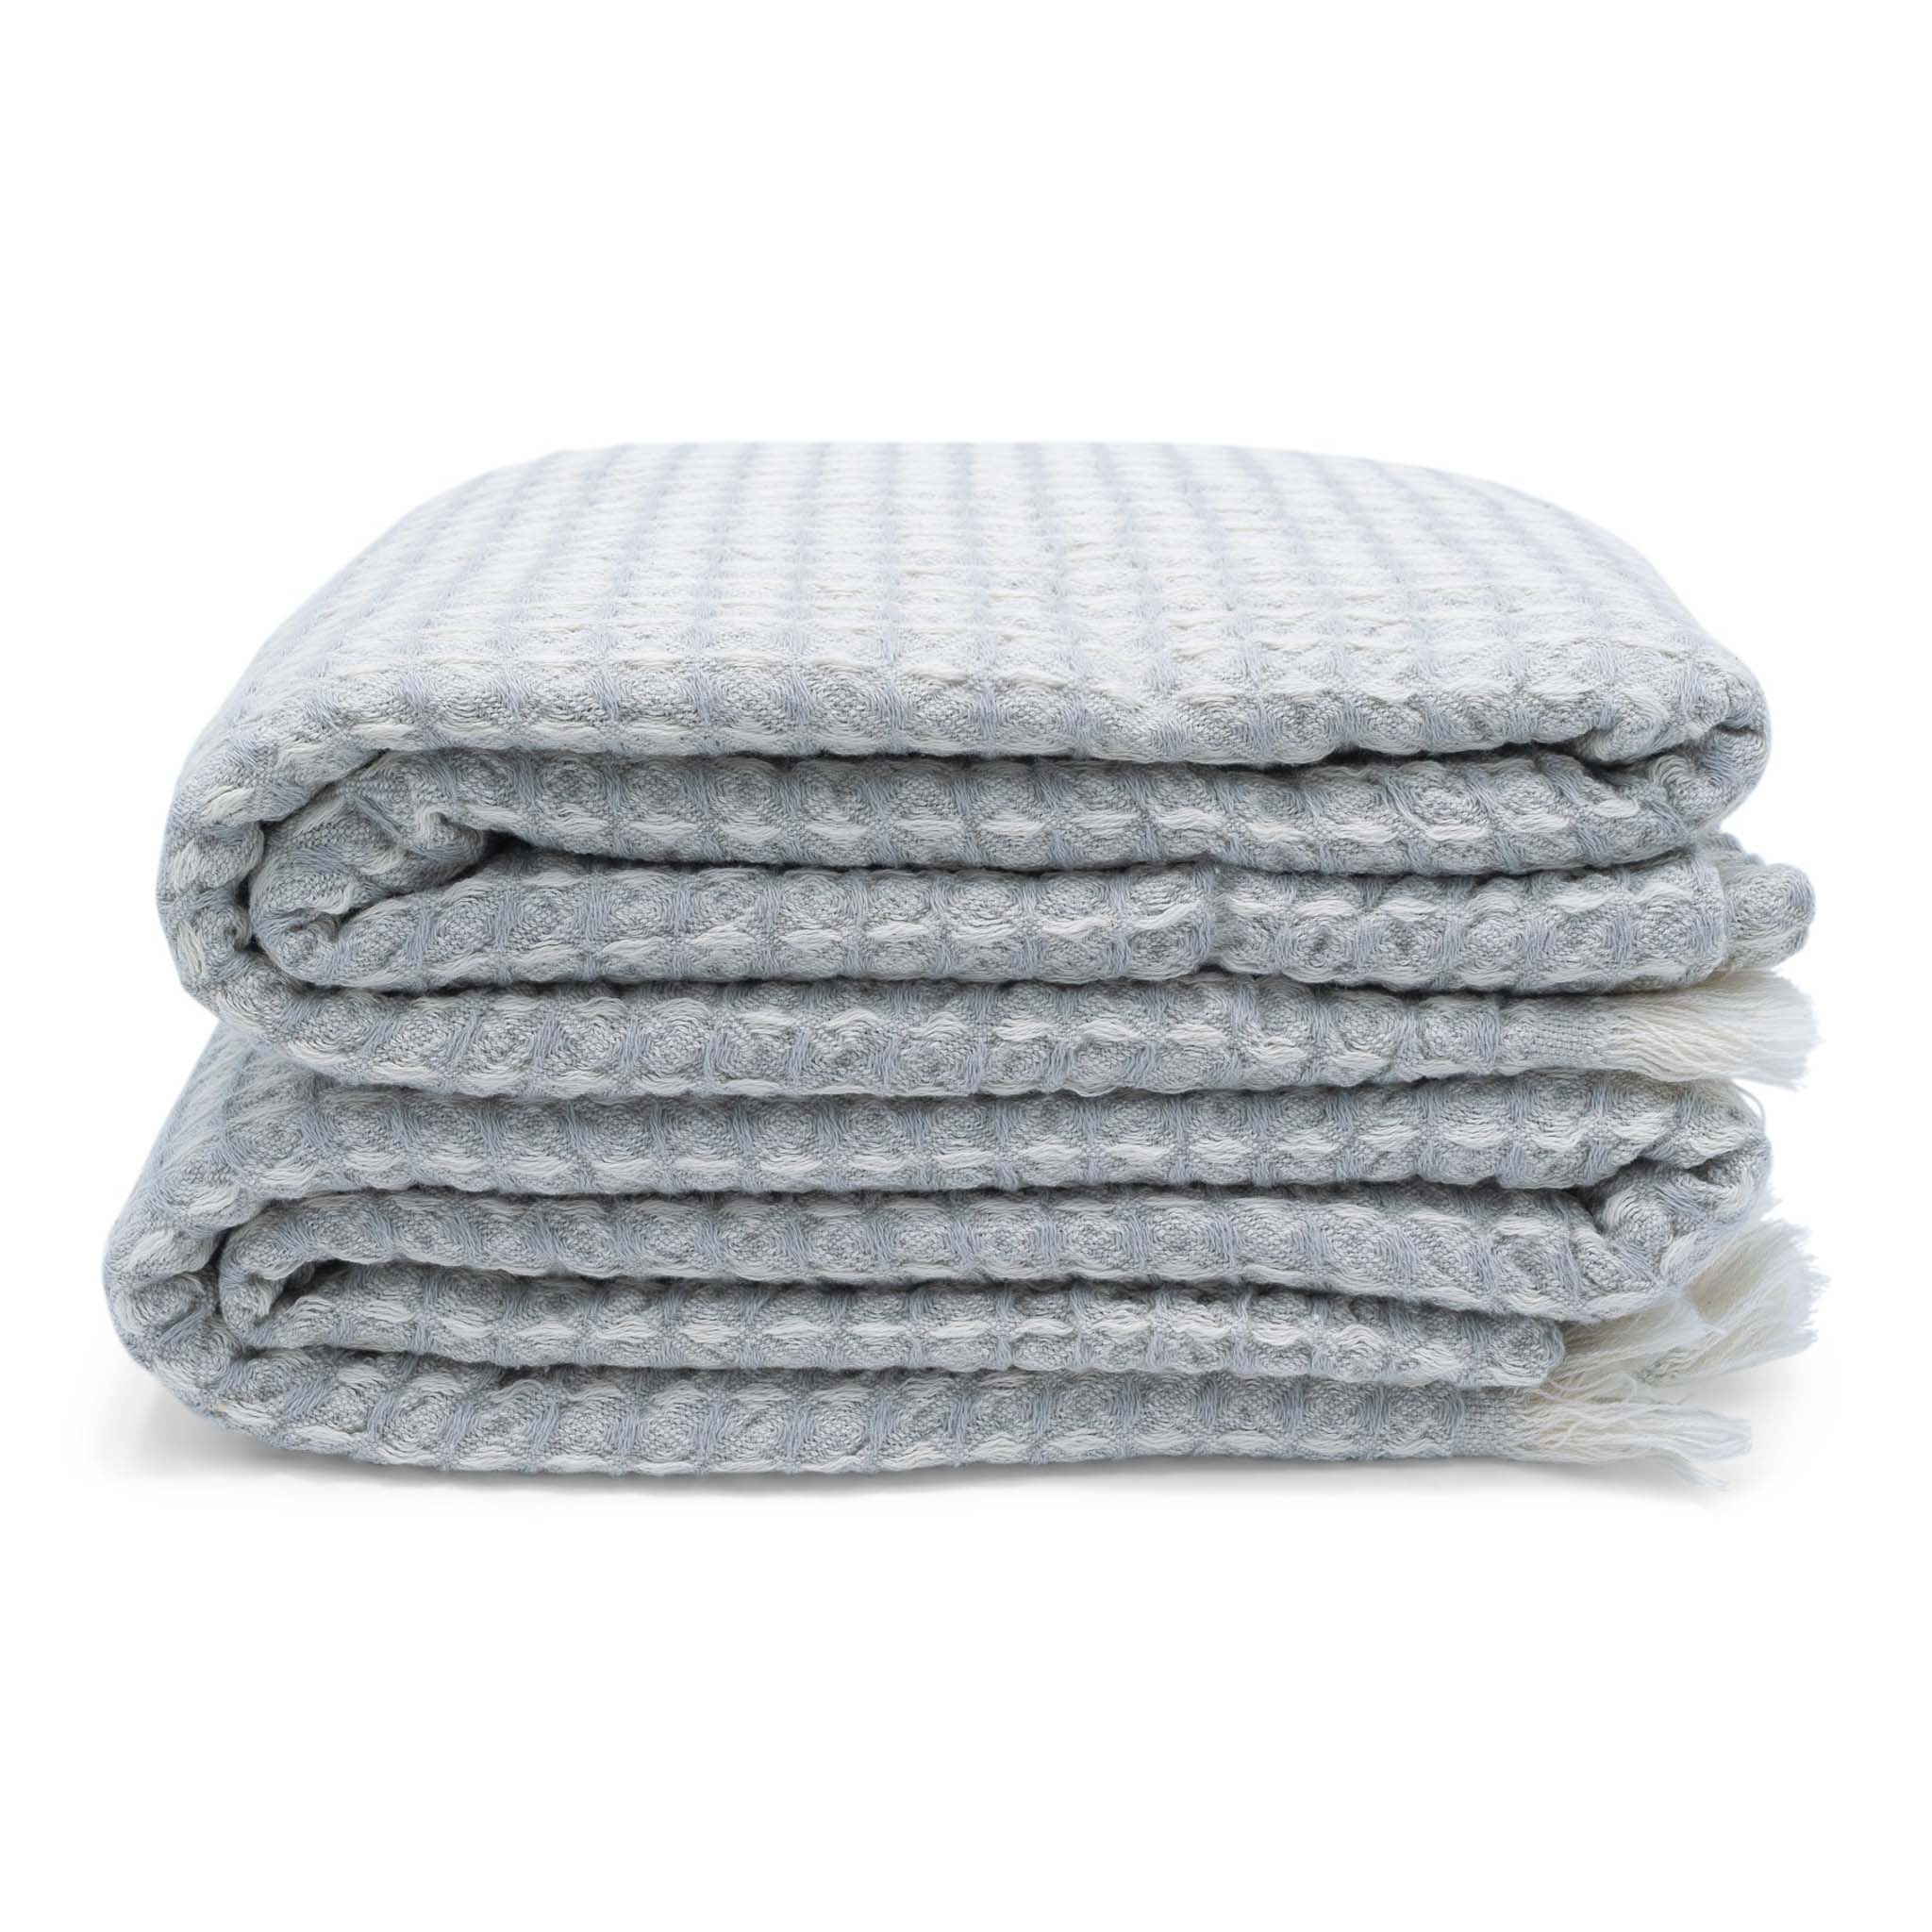 Bruges Towel Silver Grey & White - HAMAMINGO